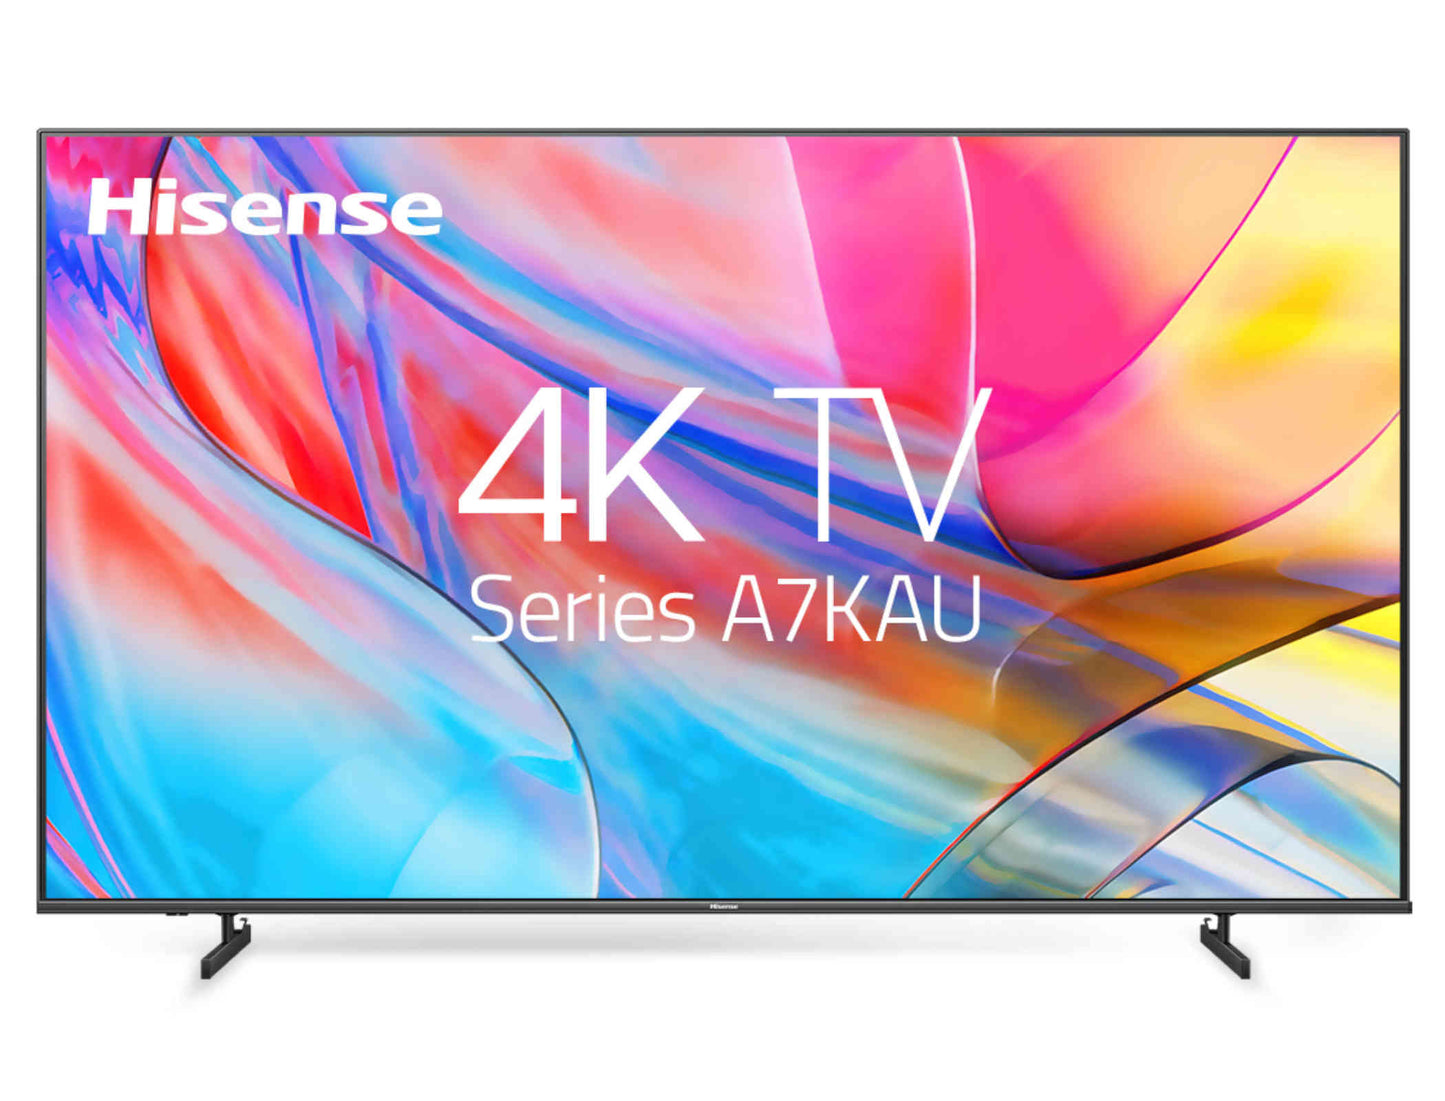 Hisense 43 inch 4K UHD Smart TV (2023) - 43A7KAU image_1